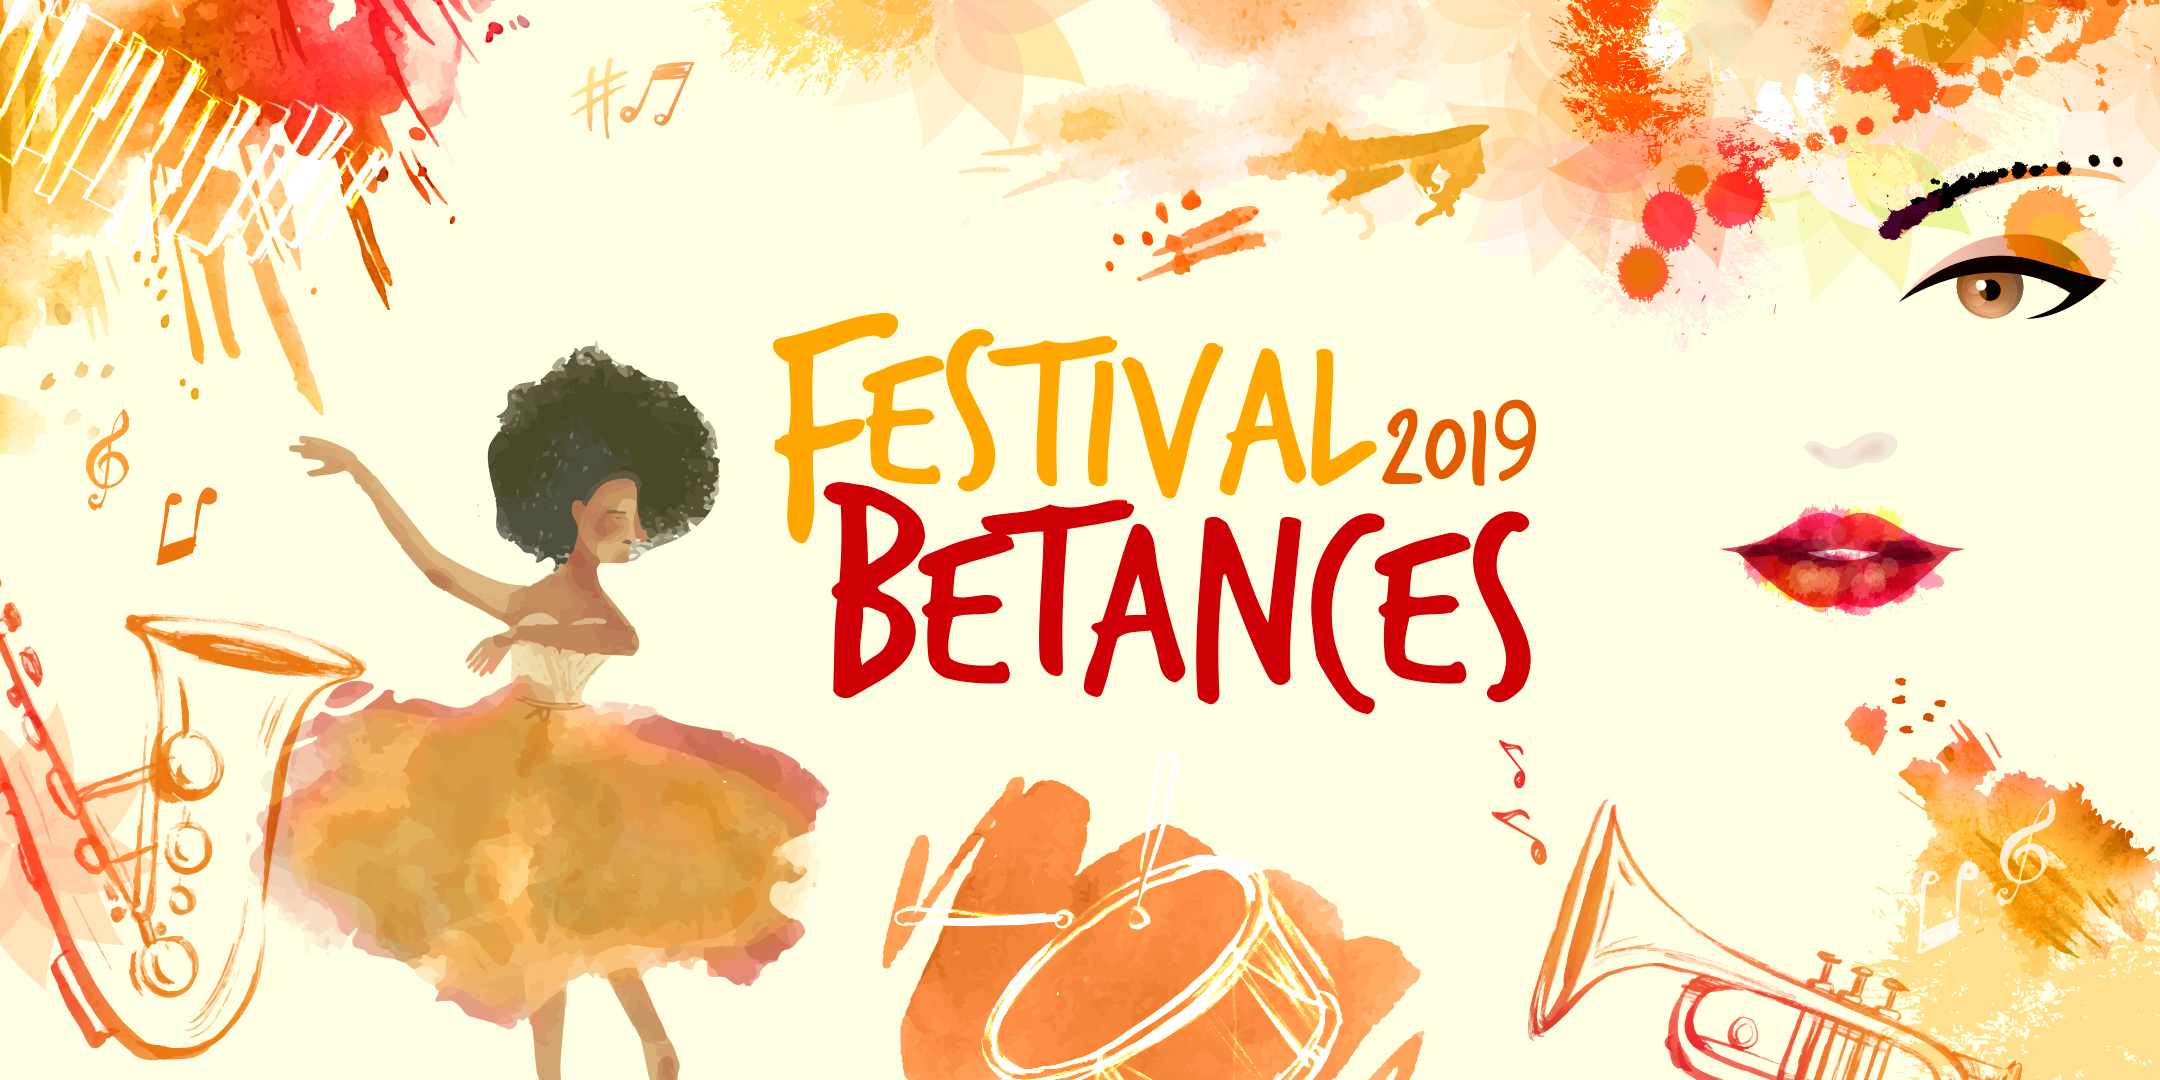 Festival Betances 2019